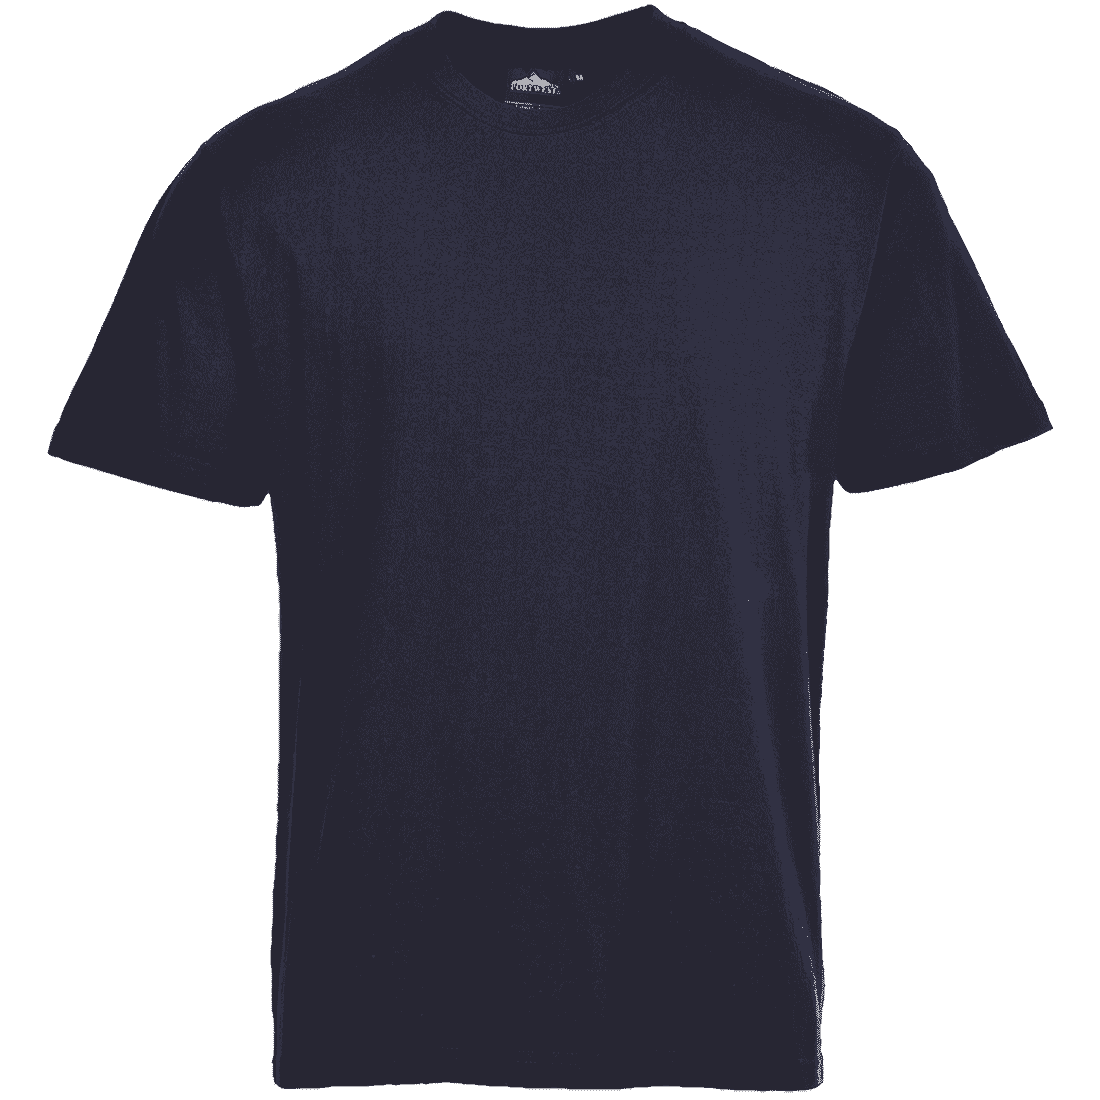 Turin Premium Work T-Shirt B195 Navy